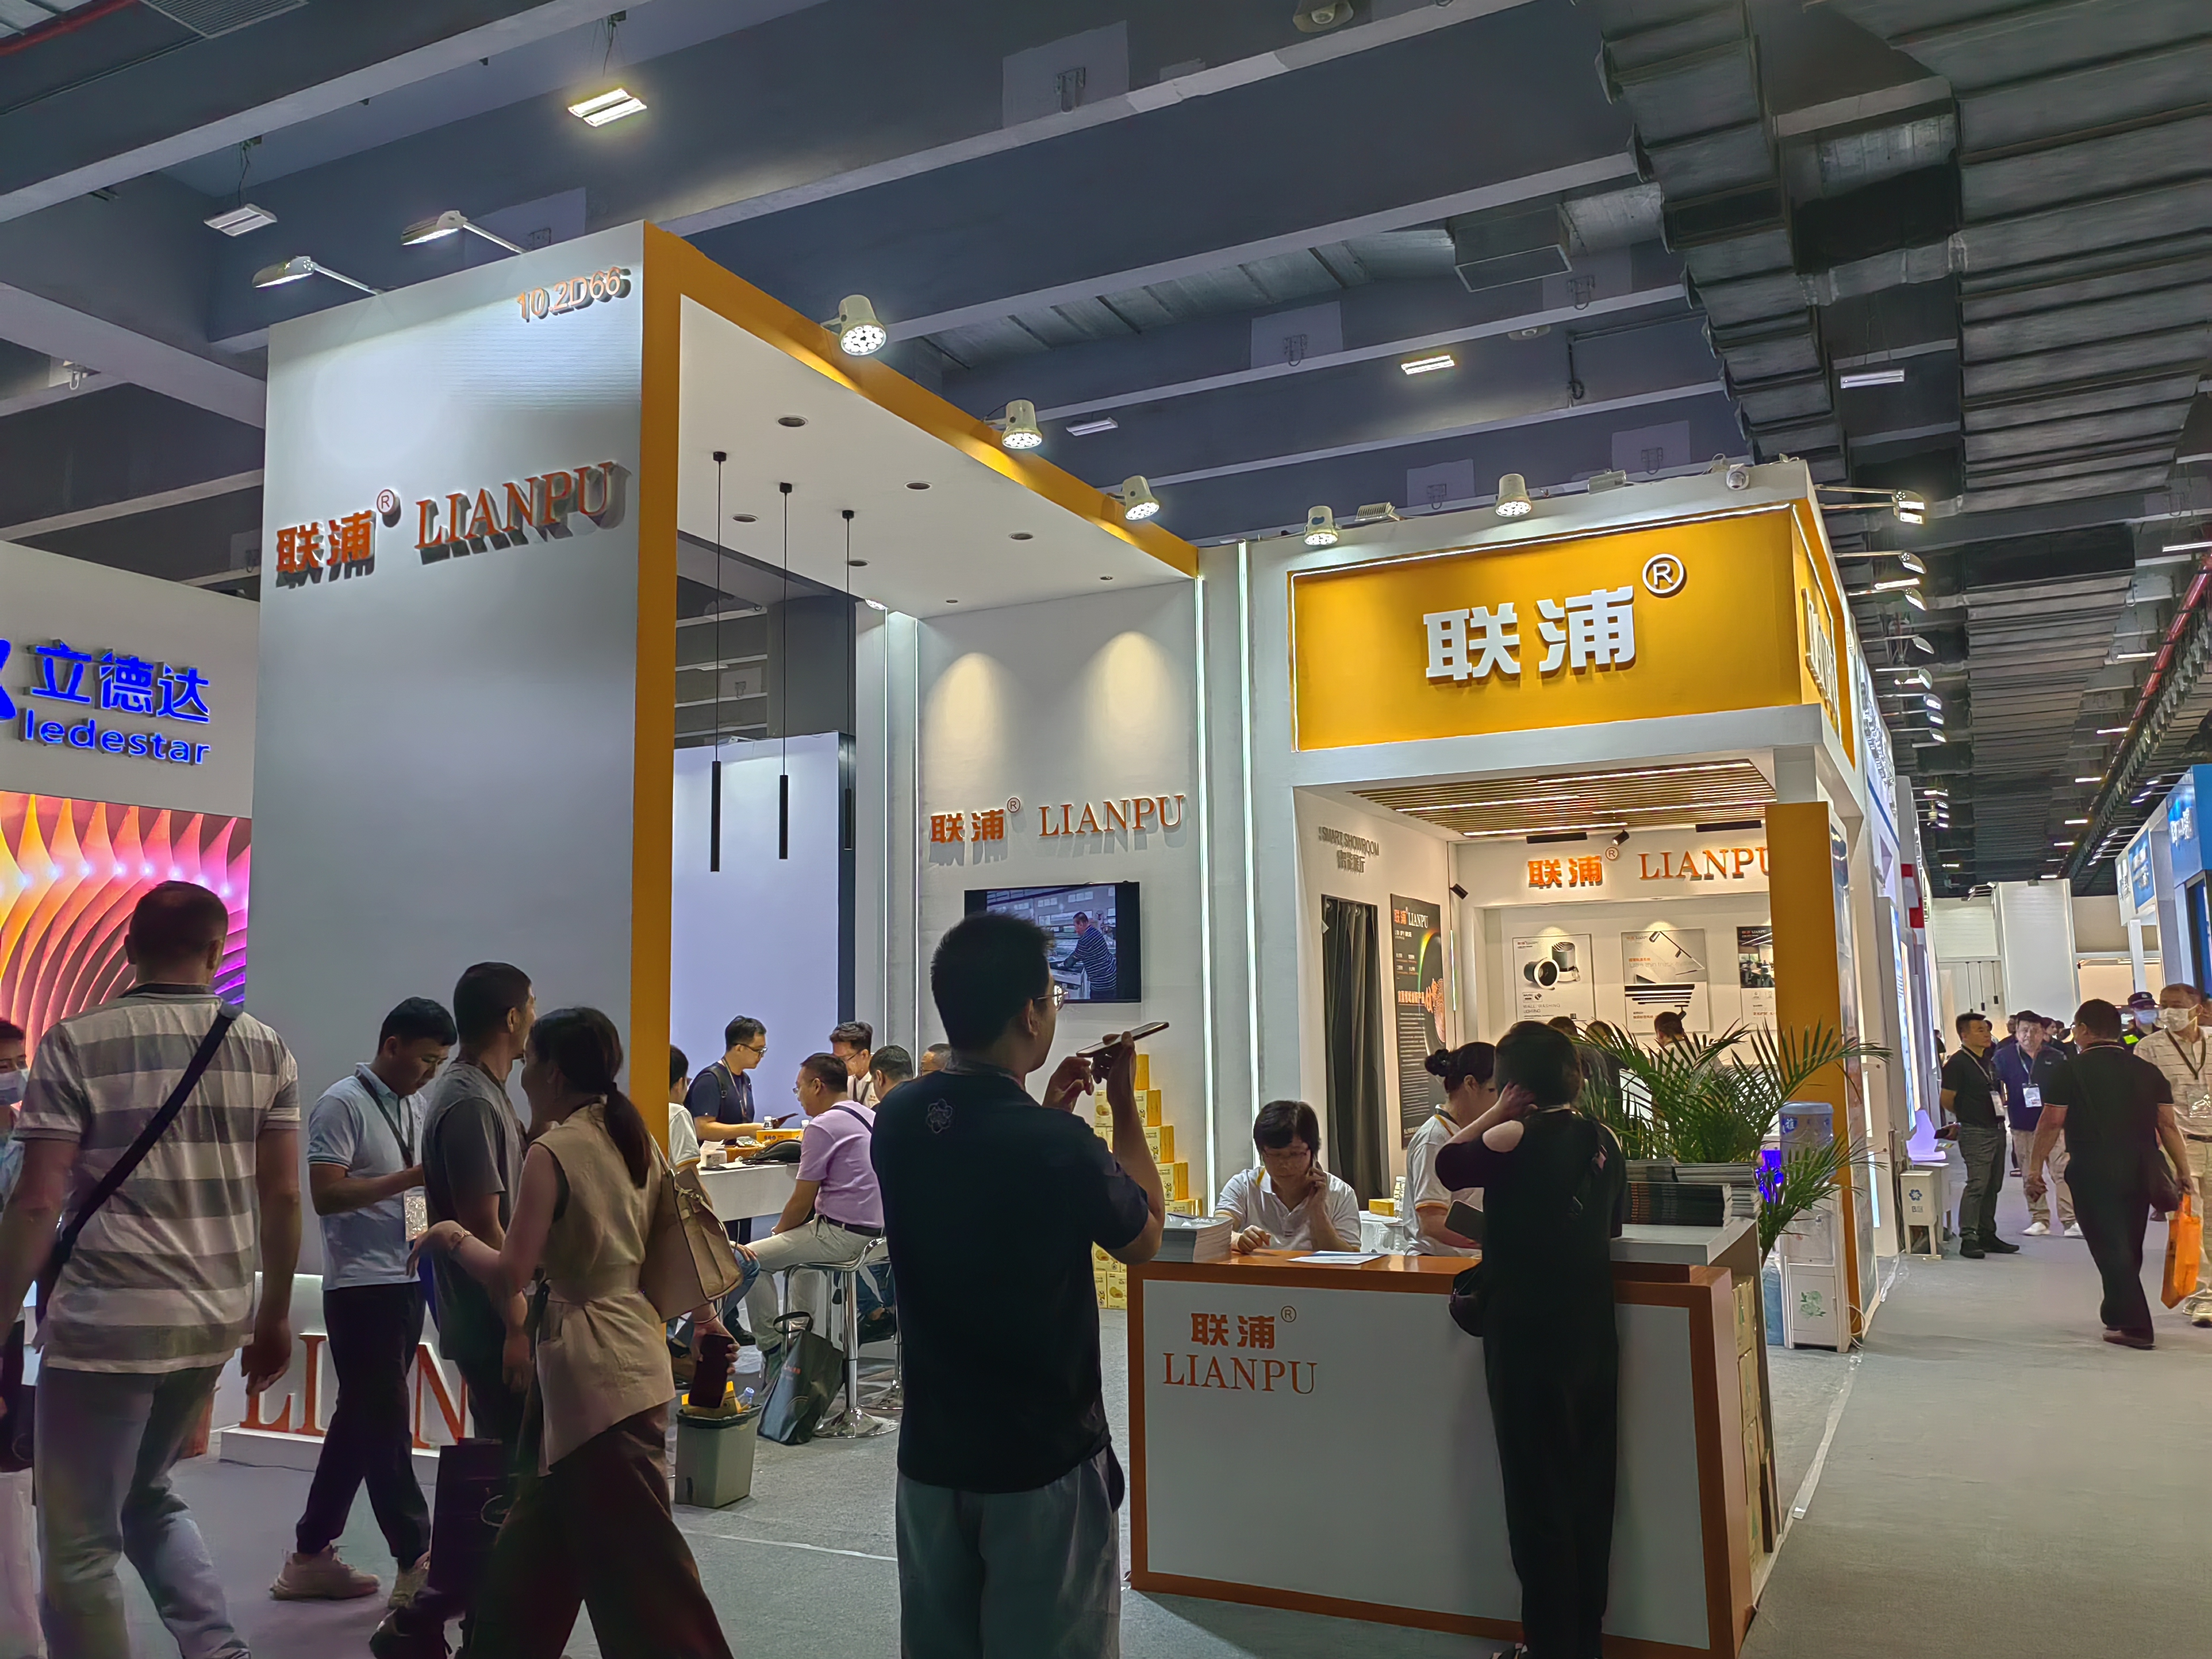 28a Feria Internacional de Exposición de Iluminación de Guangzhou